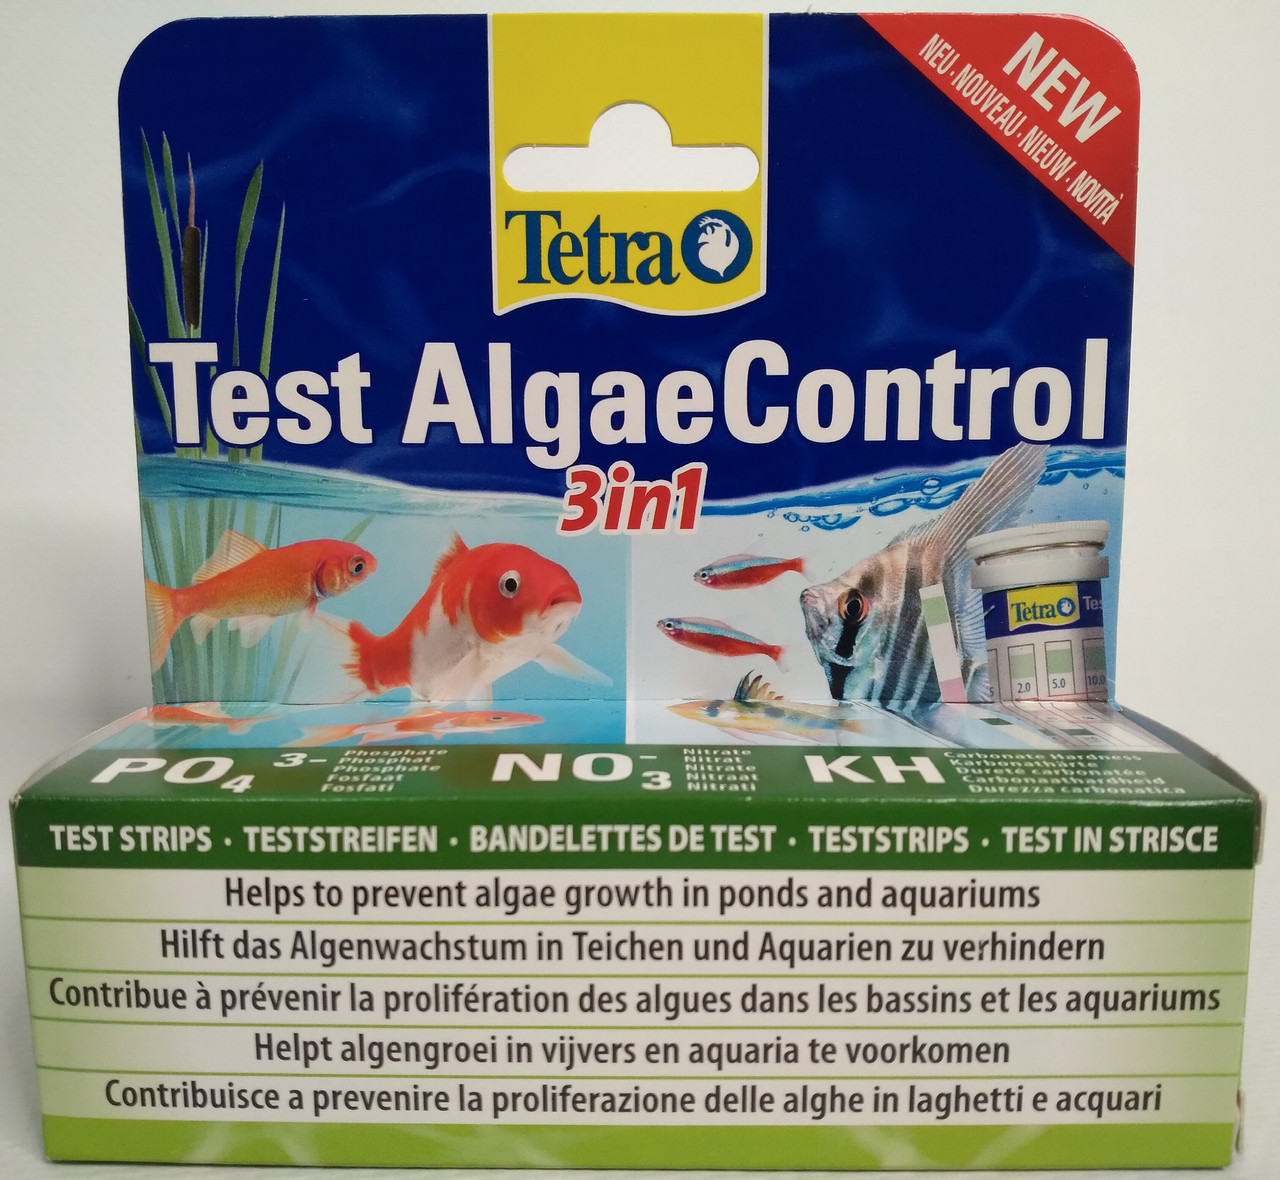  Полоски для пресной воды Test AlgaeControl 3 in1 PO4/NO3/KH  25шт